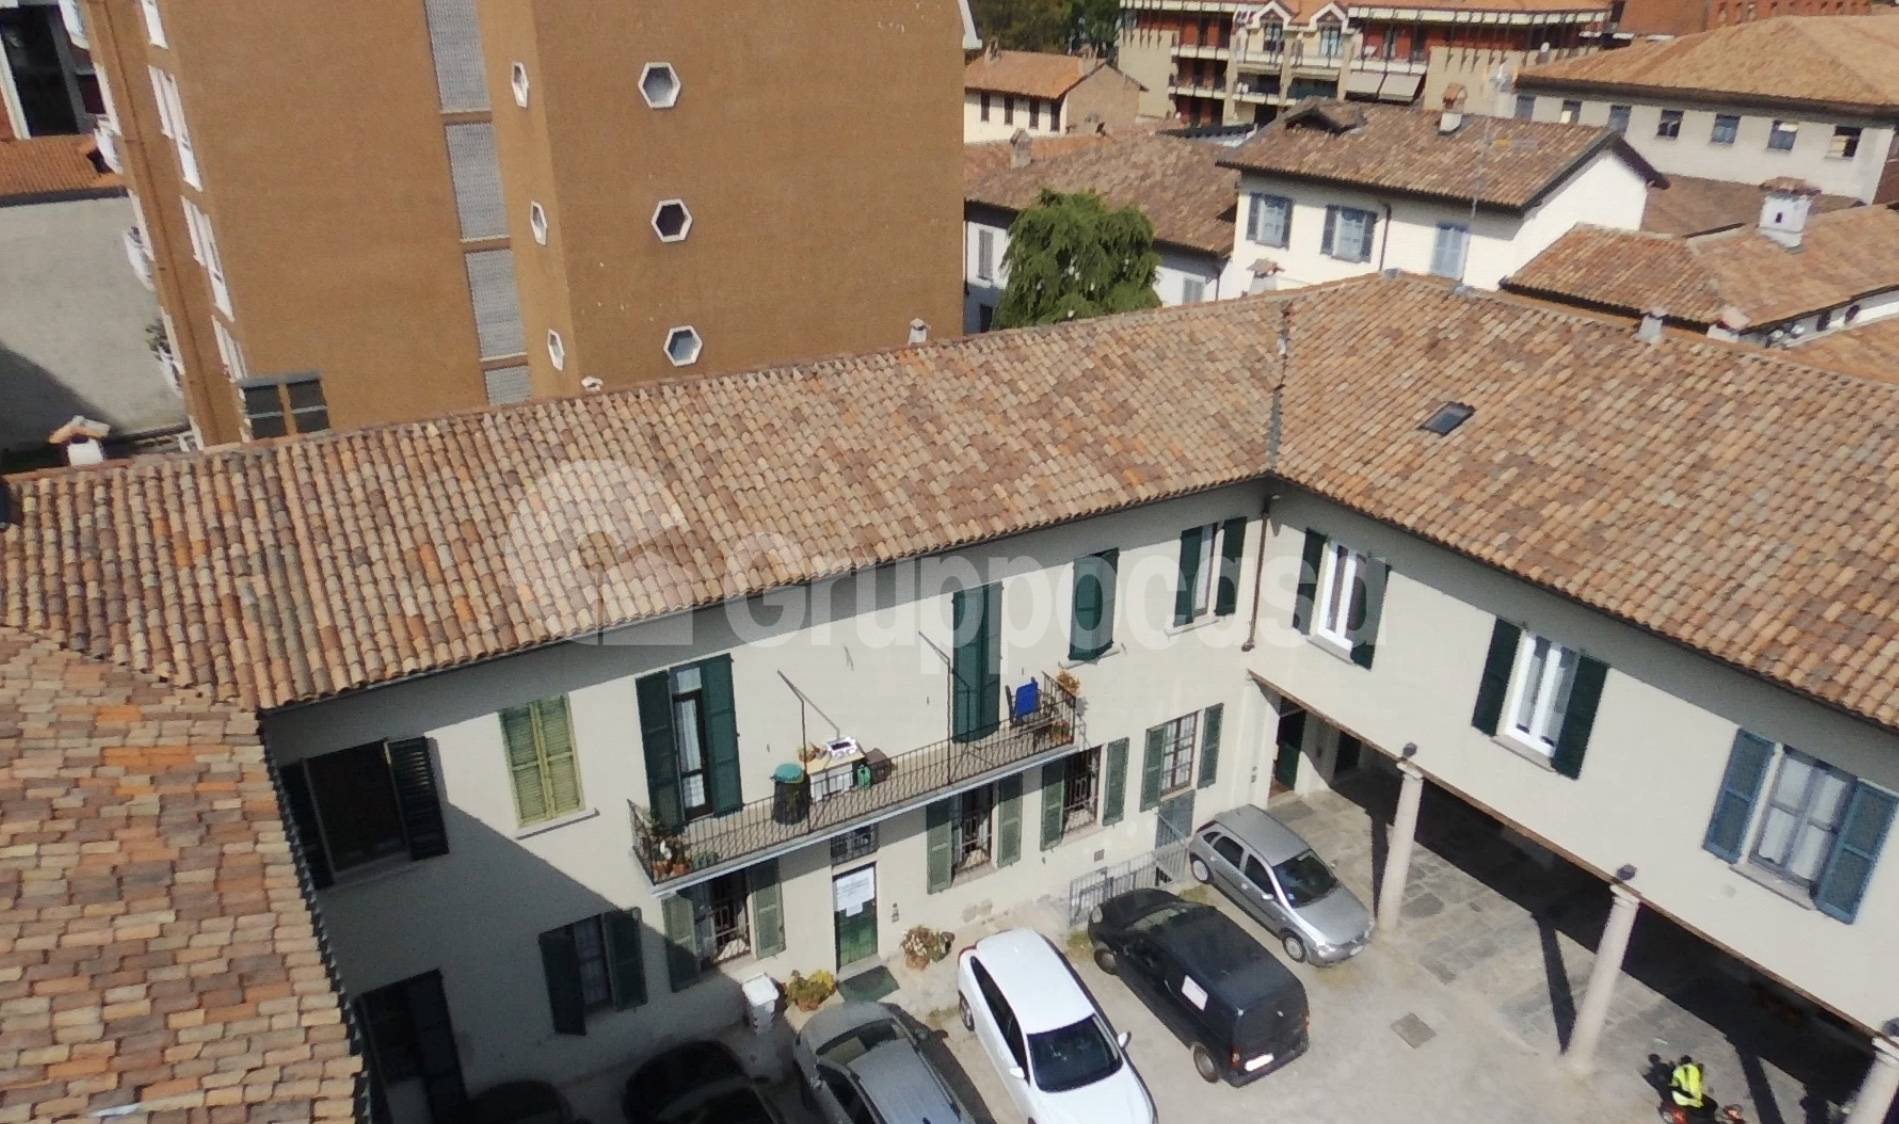 Ufficio / Studio in affitto a Abbiategrasso, 9999 locali, zona adina, prezzo € 160.000 | PortaleAgenzieImmobiliari.it